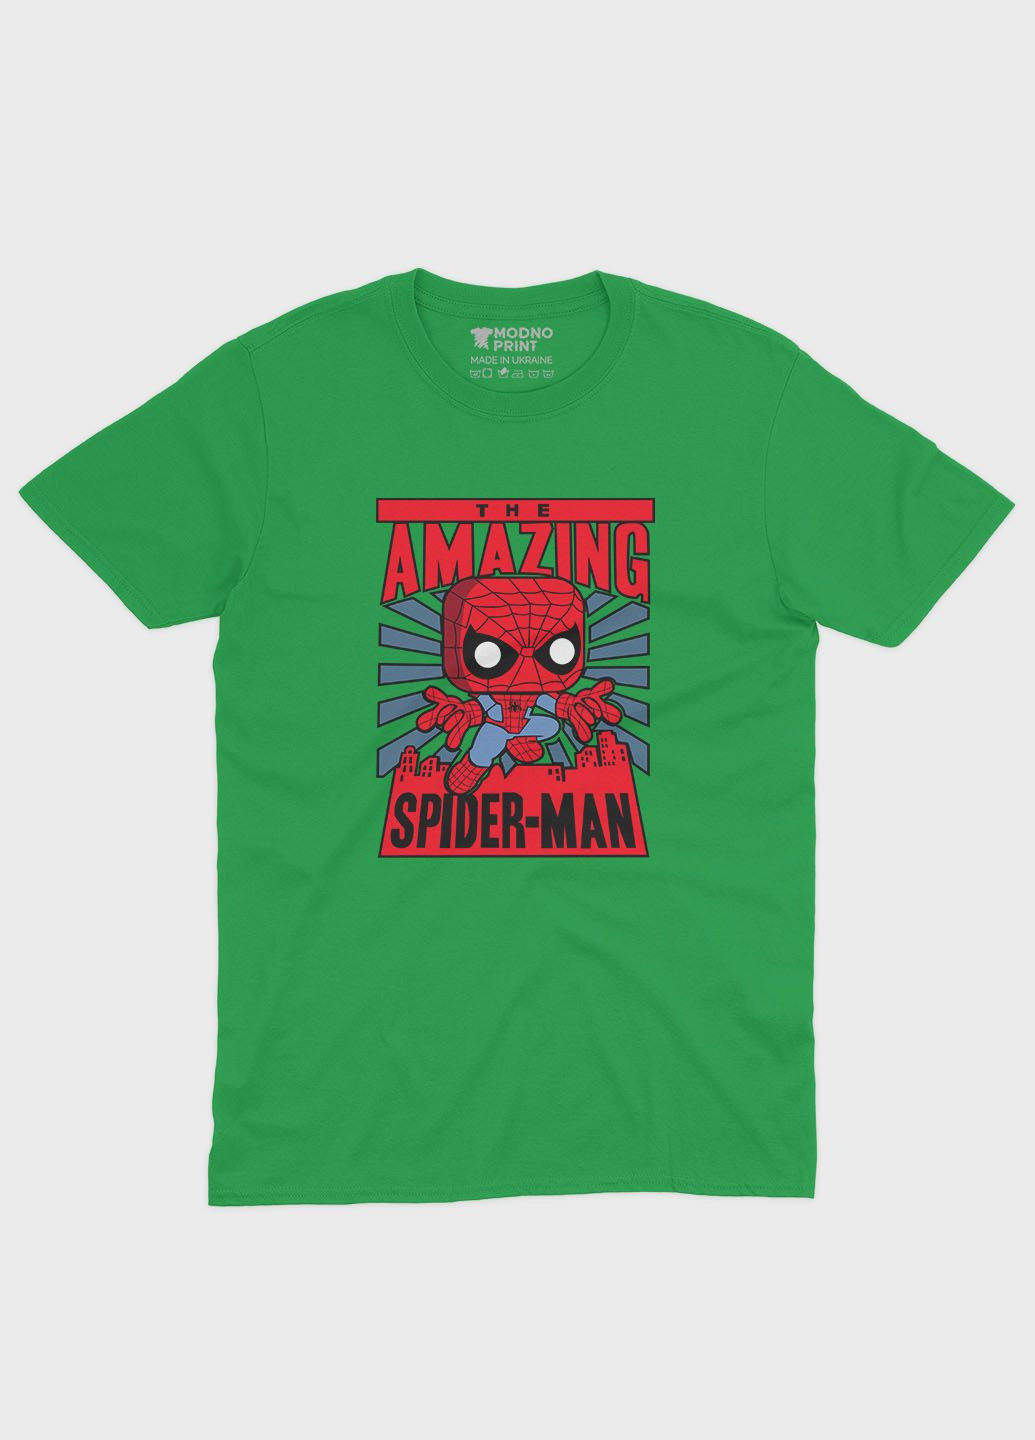 Зеленая демисезонная футболка для мальчика с принтом супергероя - человек-паук (ts001-1-keg-006-014-026-b) Modno